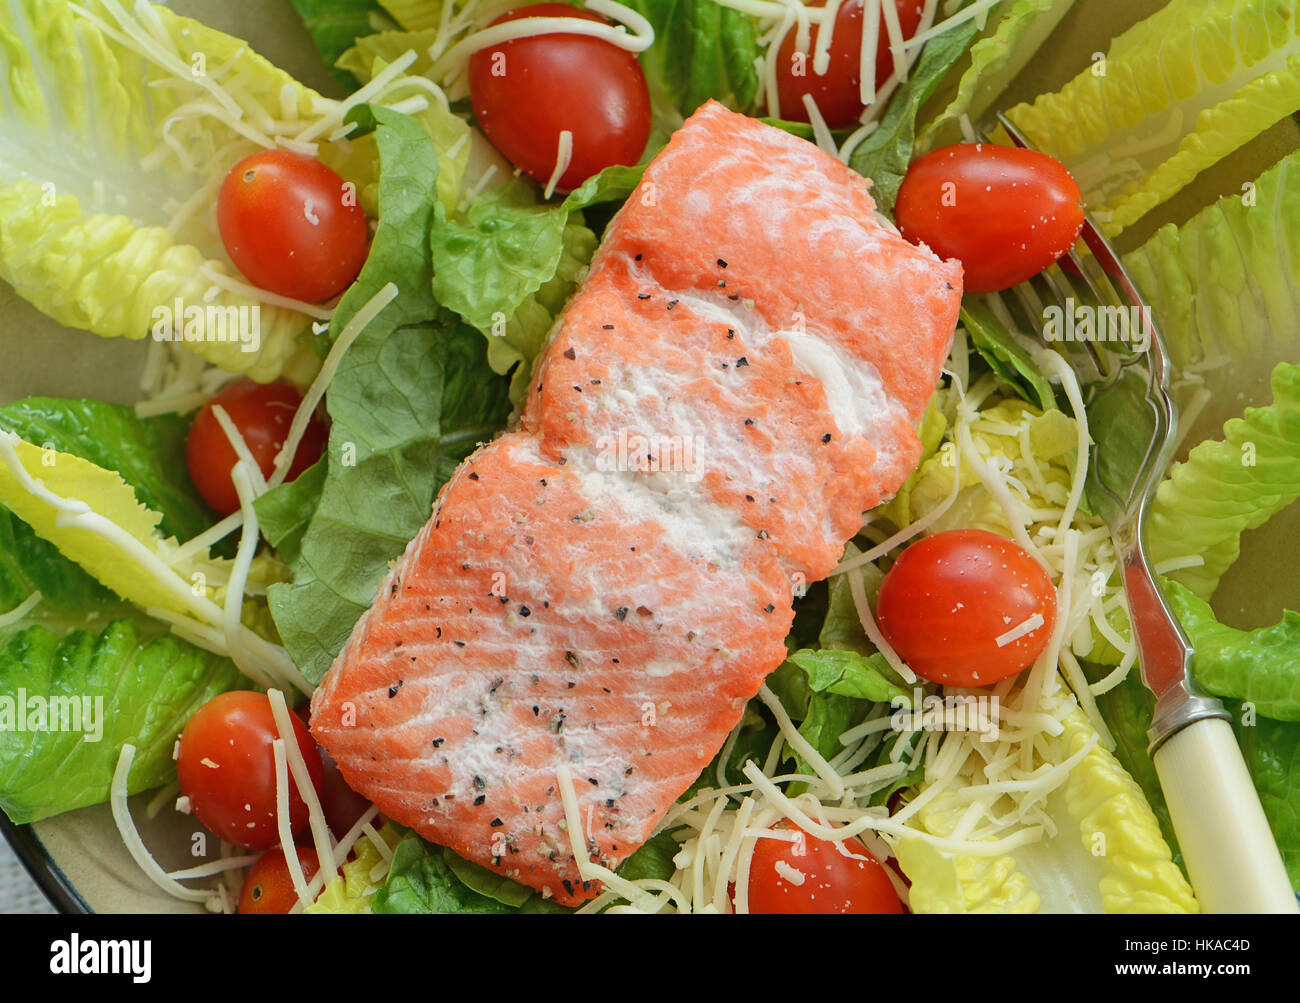 Cotte a freddo di filetto di salmone con insalata assortiti ingredienti per un pranzo sano Foto Stock